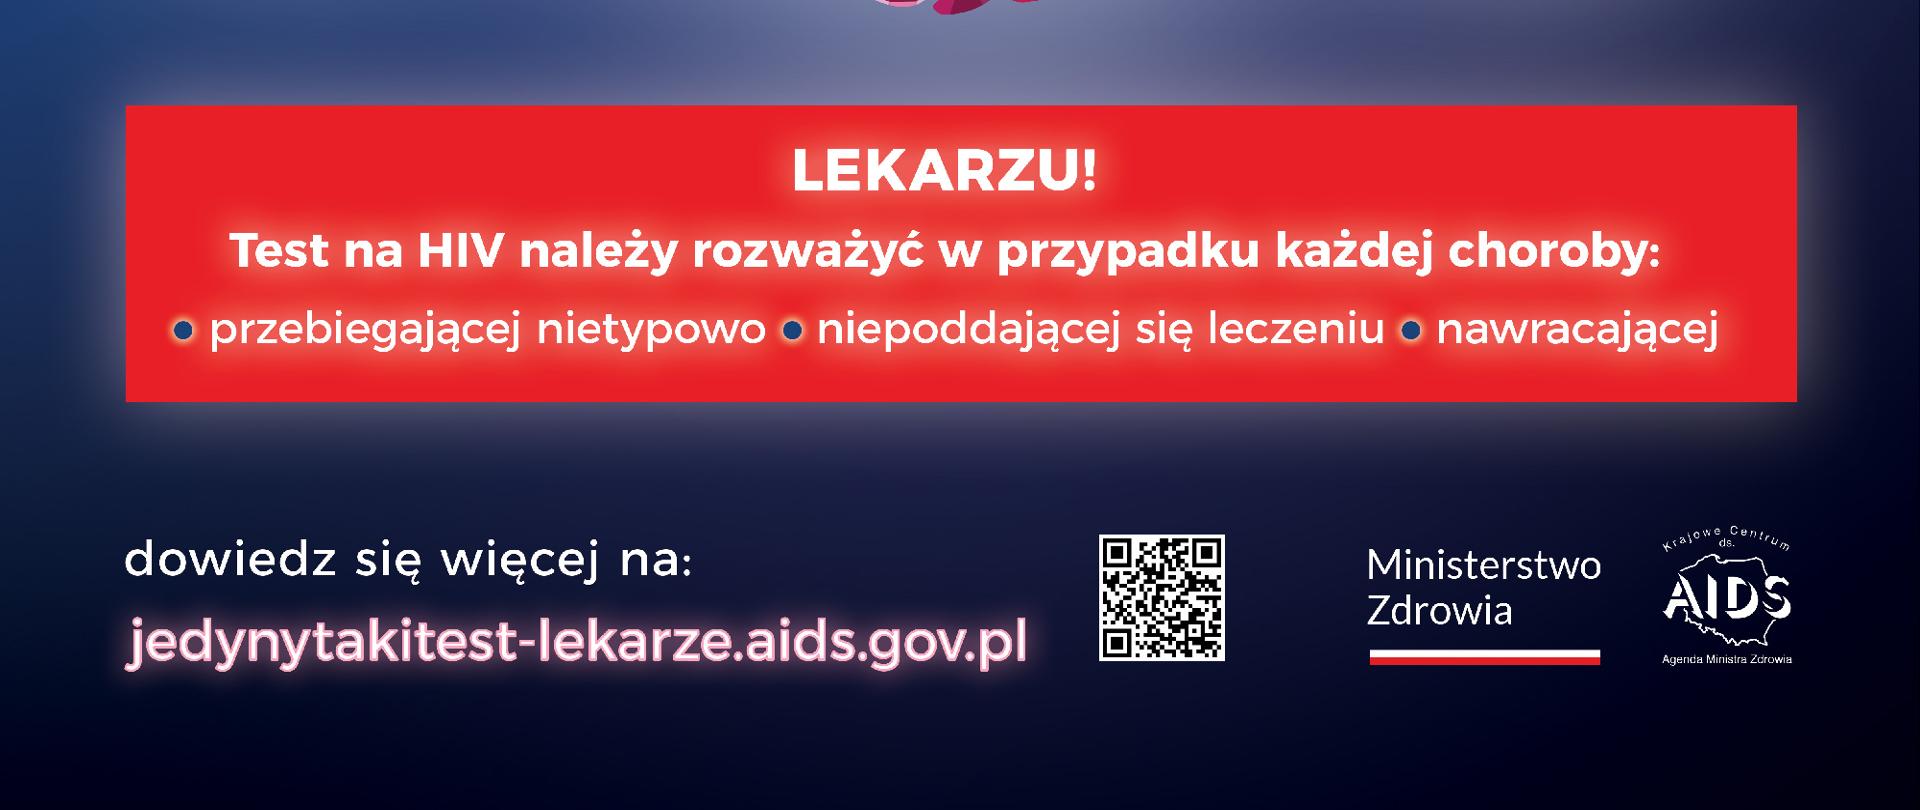 Plakat kampanii skierowany do lekarzy dot. testu na HIV